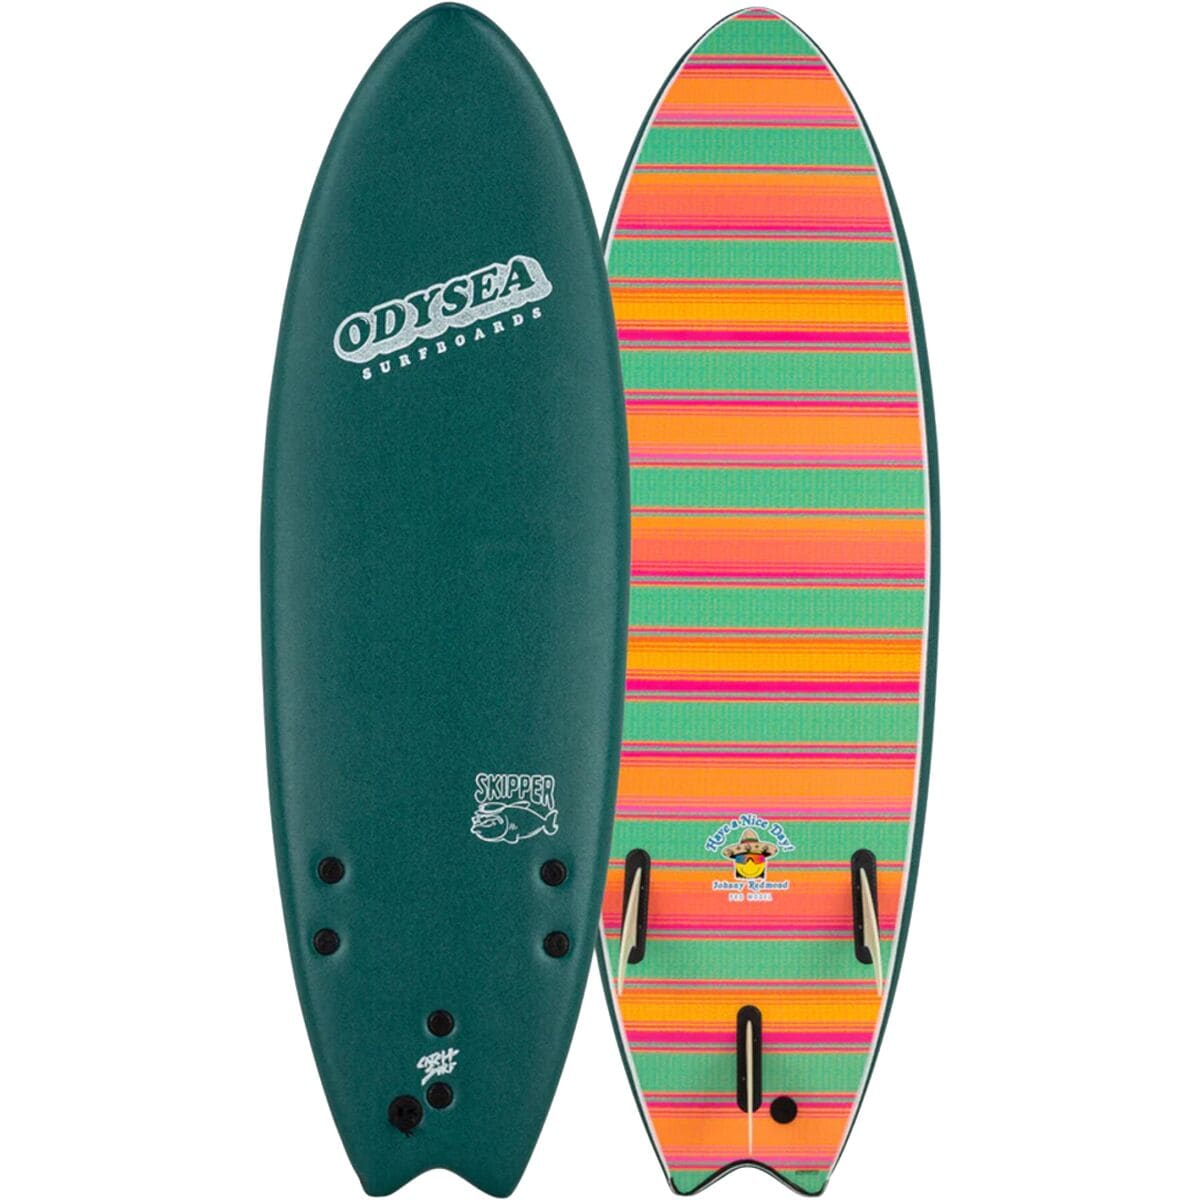 Catch Surf Odysea Skipper Tri-Johnny R Surfboard